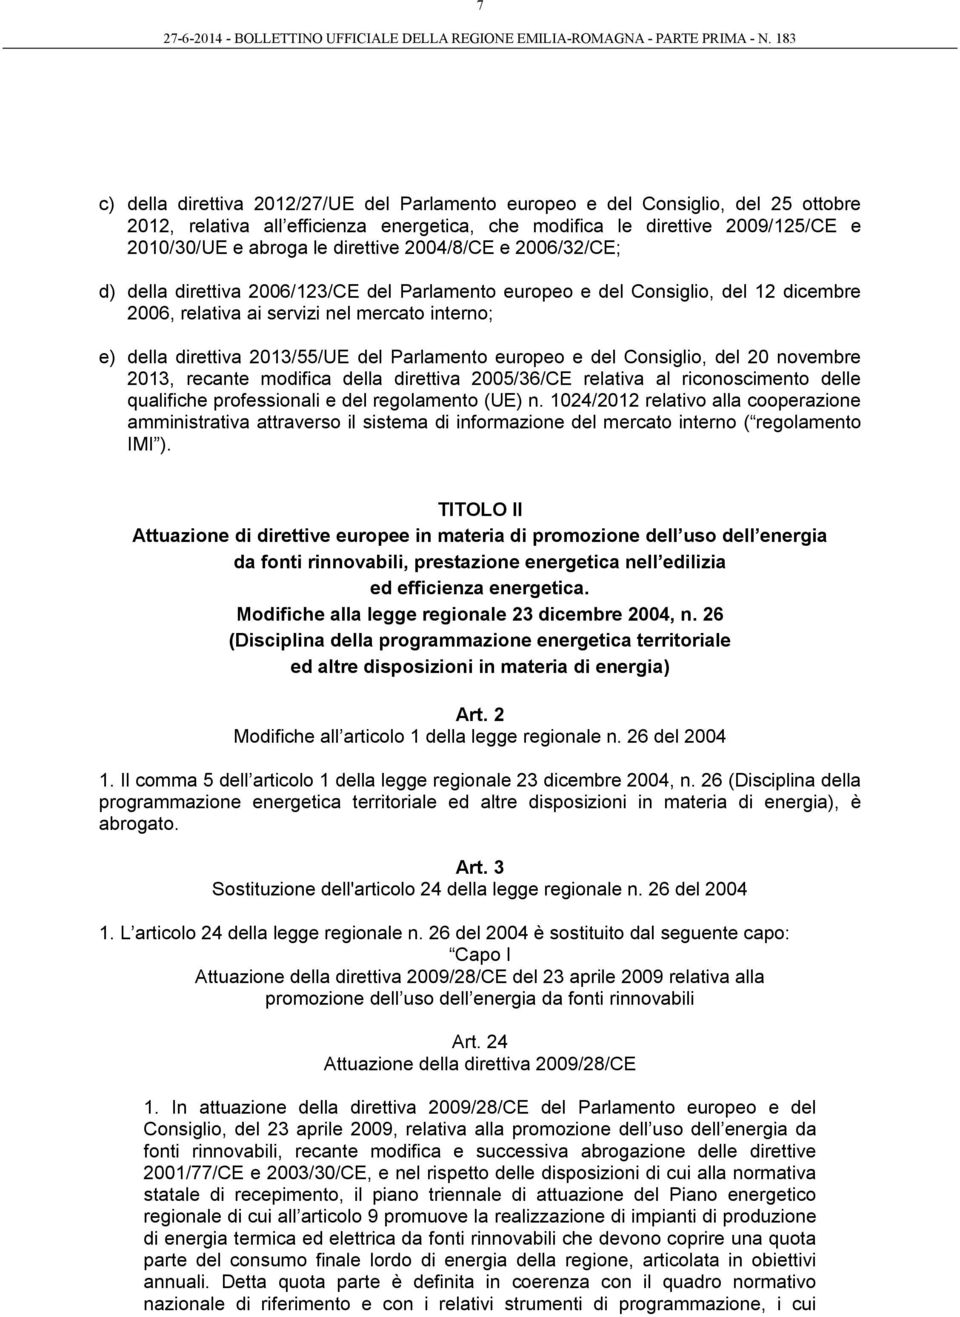 del Parlamento europeo e del Consiglio, del 20 novembre 2013, recante modifica della direttiva 2005/36/CE relativa al riconoscimento delle qualifiche professionali e del regolamento (UE) n.